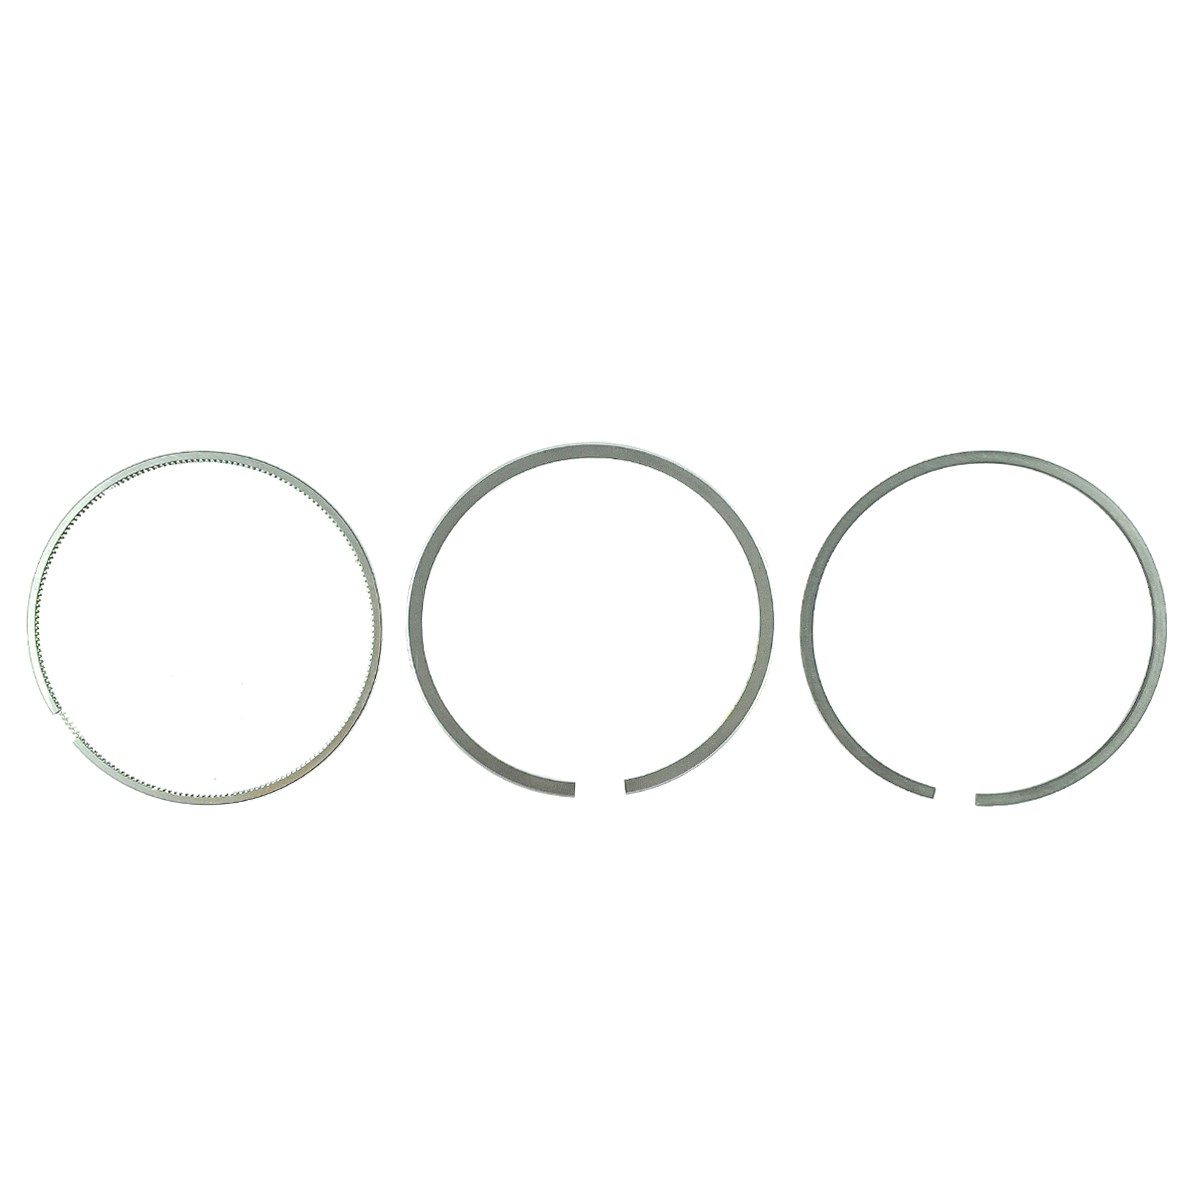 Pístní kroužky / Ø 98 mm / 2,00 x 2,00 x 3,00 mm / Kubota V3300/V3600 / Kubota M8200/M9000 / 1C011-21050 / 6-26-100-75